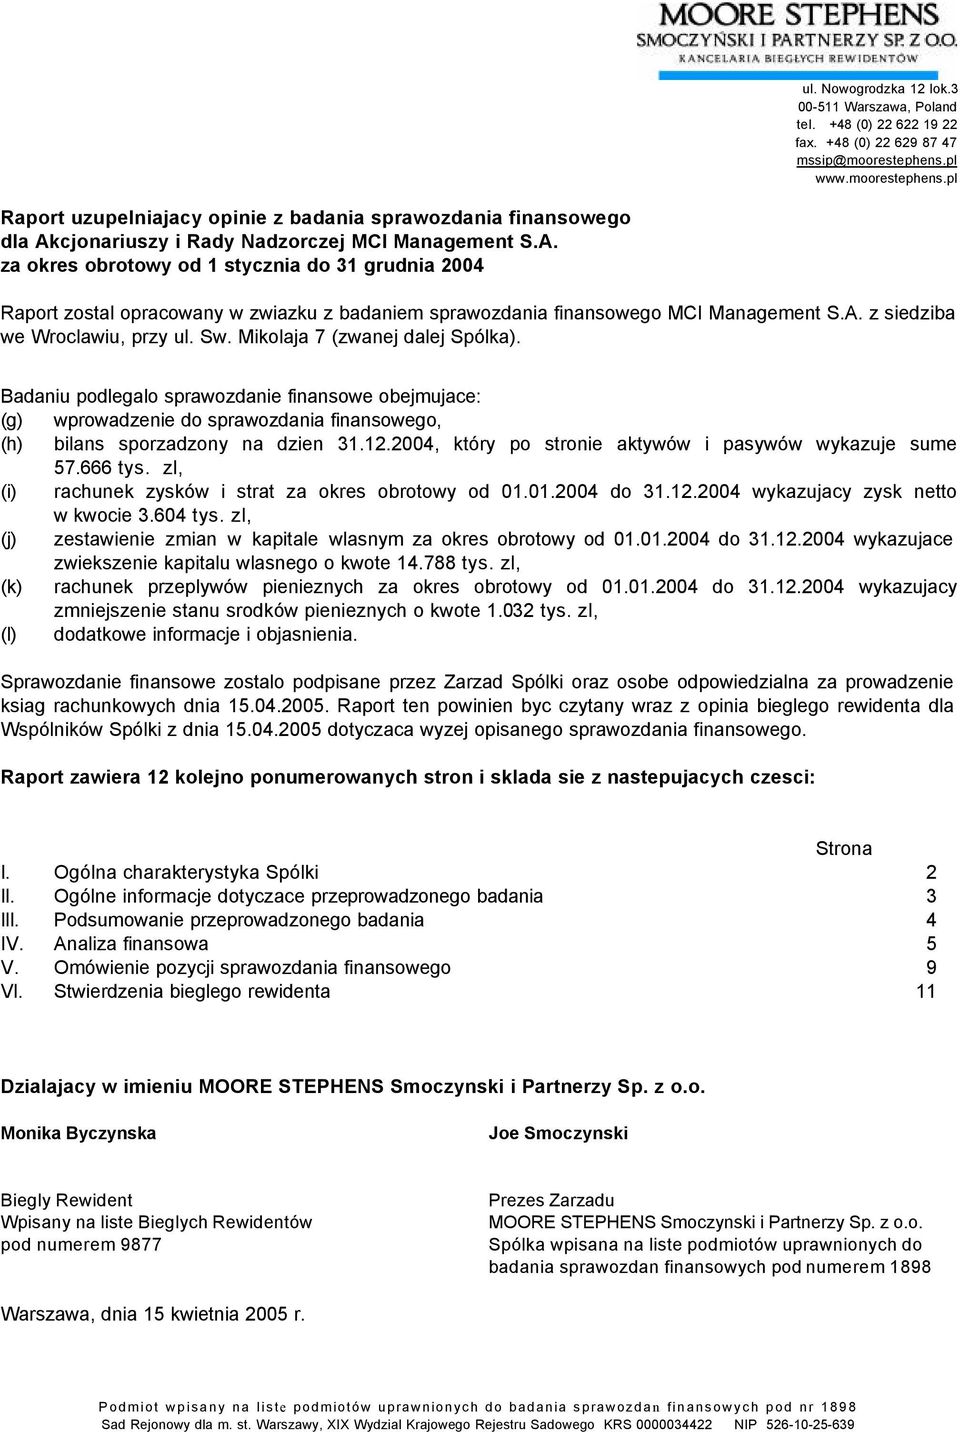 cjonariuszy i Rady Nadzorczej MCI Management S.A. za okres obrotowy od 1 stycznia do 31 grudnia 2004 Raport zostal opracowany w zwiazku z badaniem sprawozdania finansowego MCI Management S.A. z siedziba we Wroclawiu, przy ul.